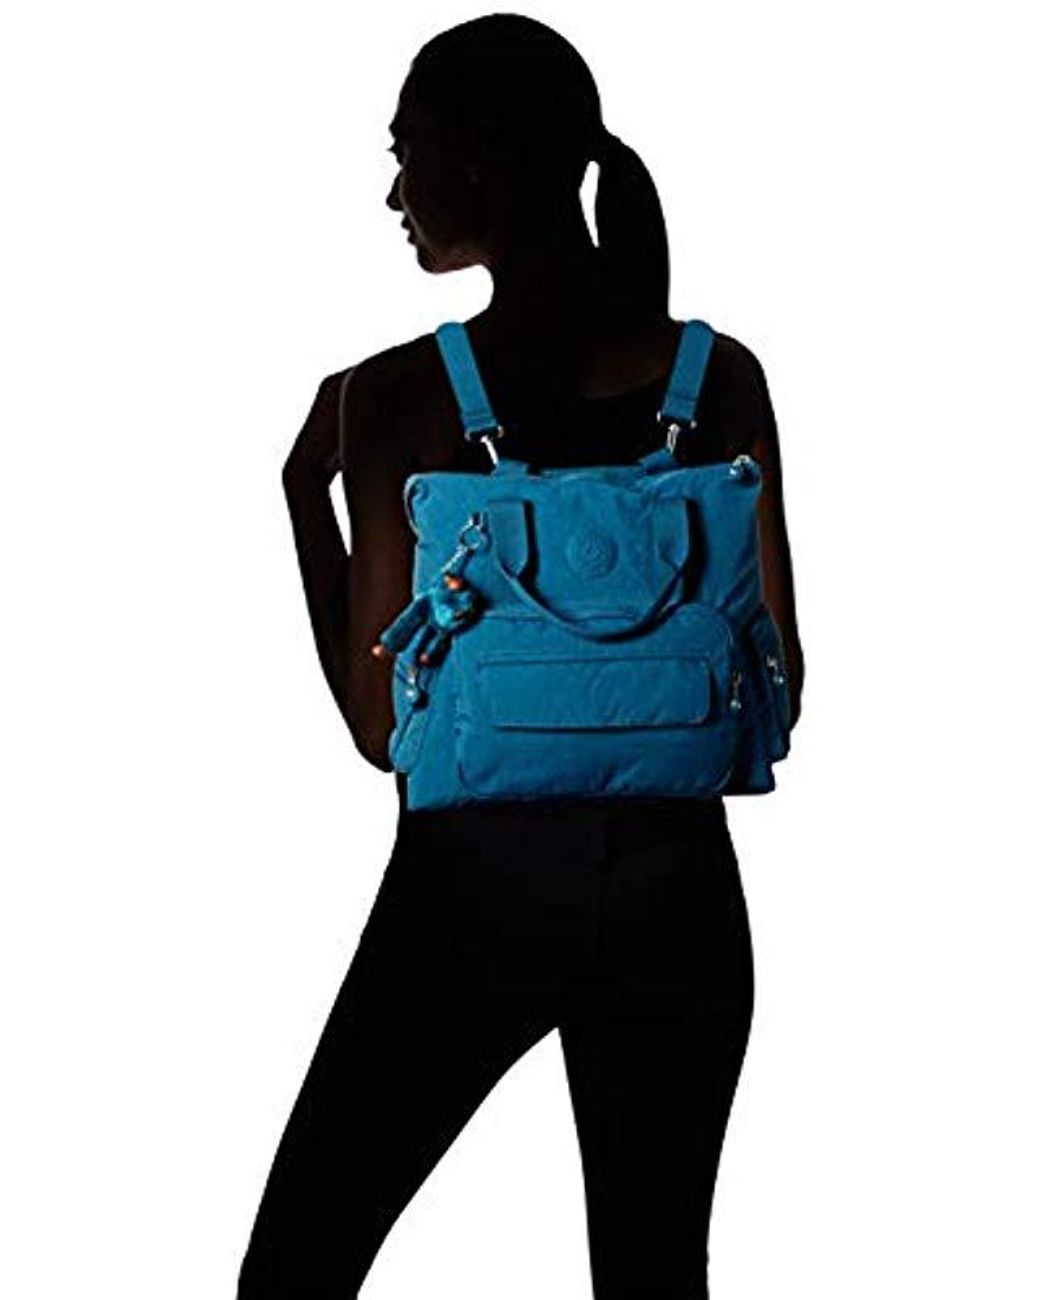 Kipling Alvy 2-in-1 Convertible Tote Bag Backpack, Wear 2 Ways, Zip Closure  in Blue | Lyst